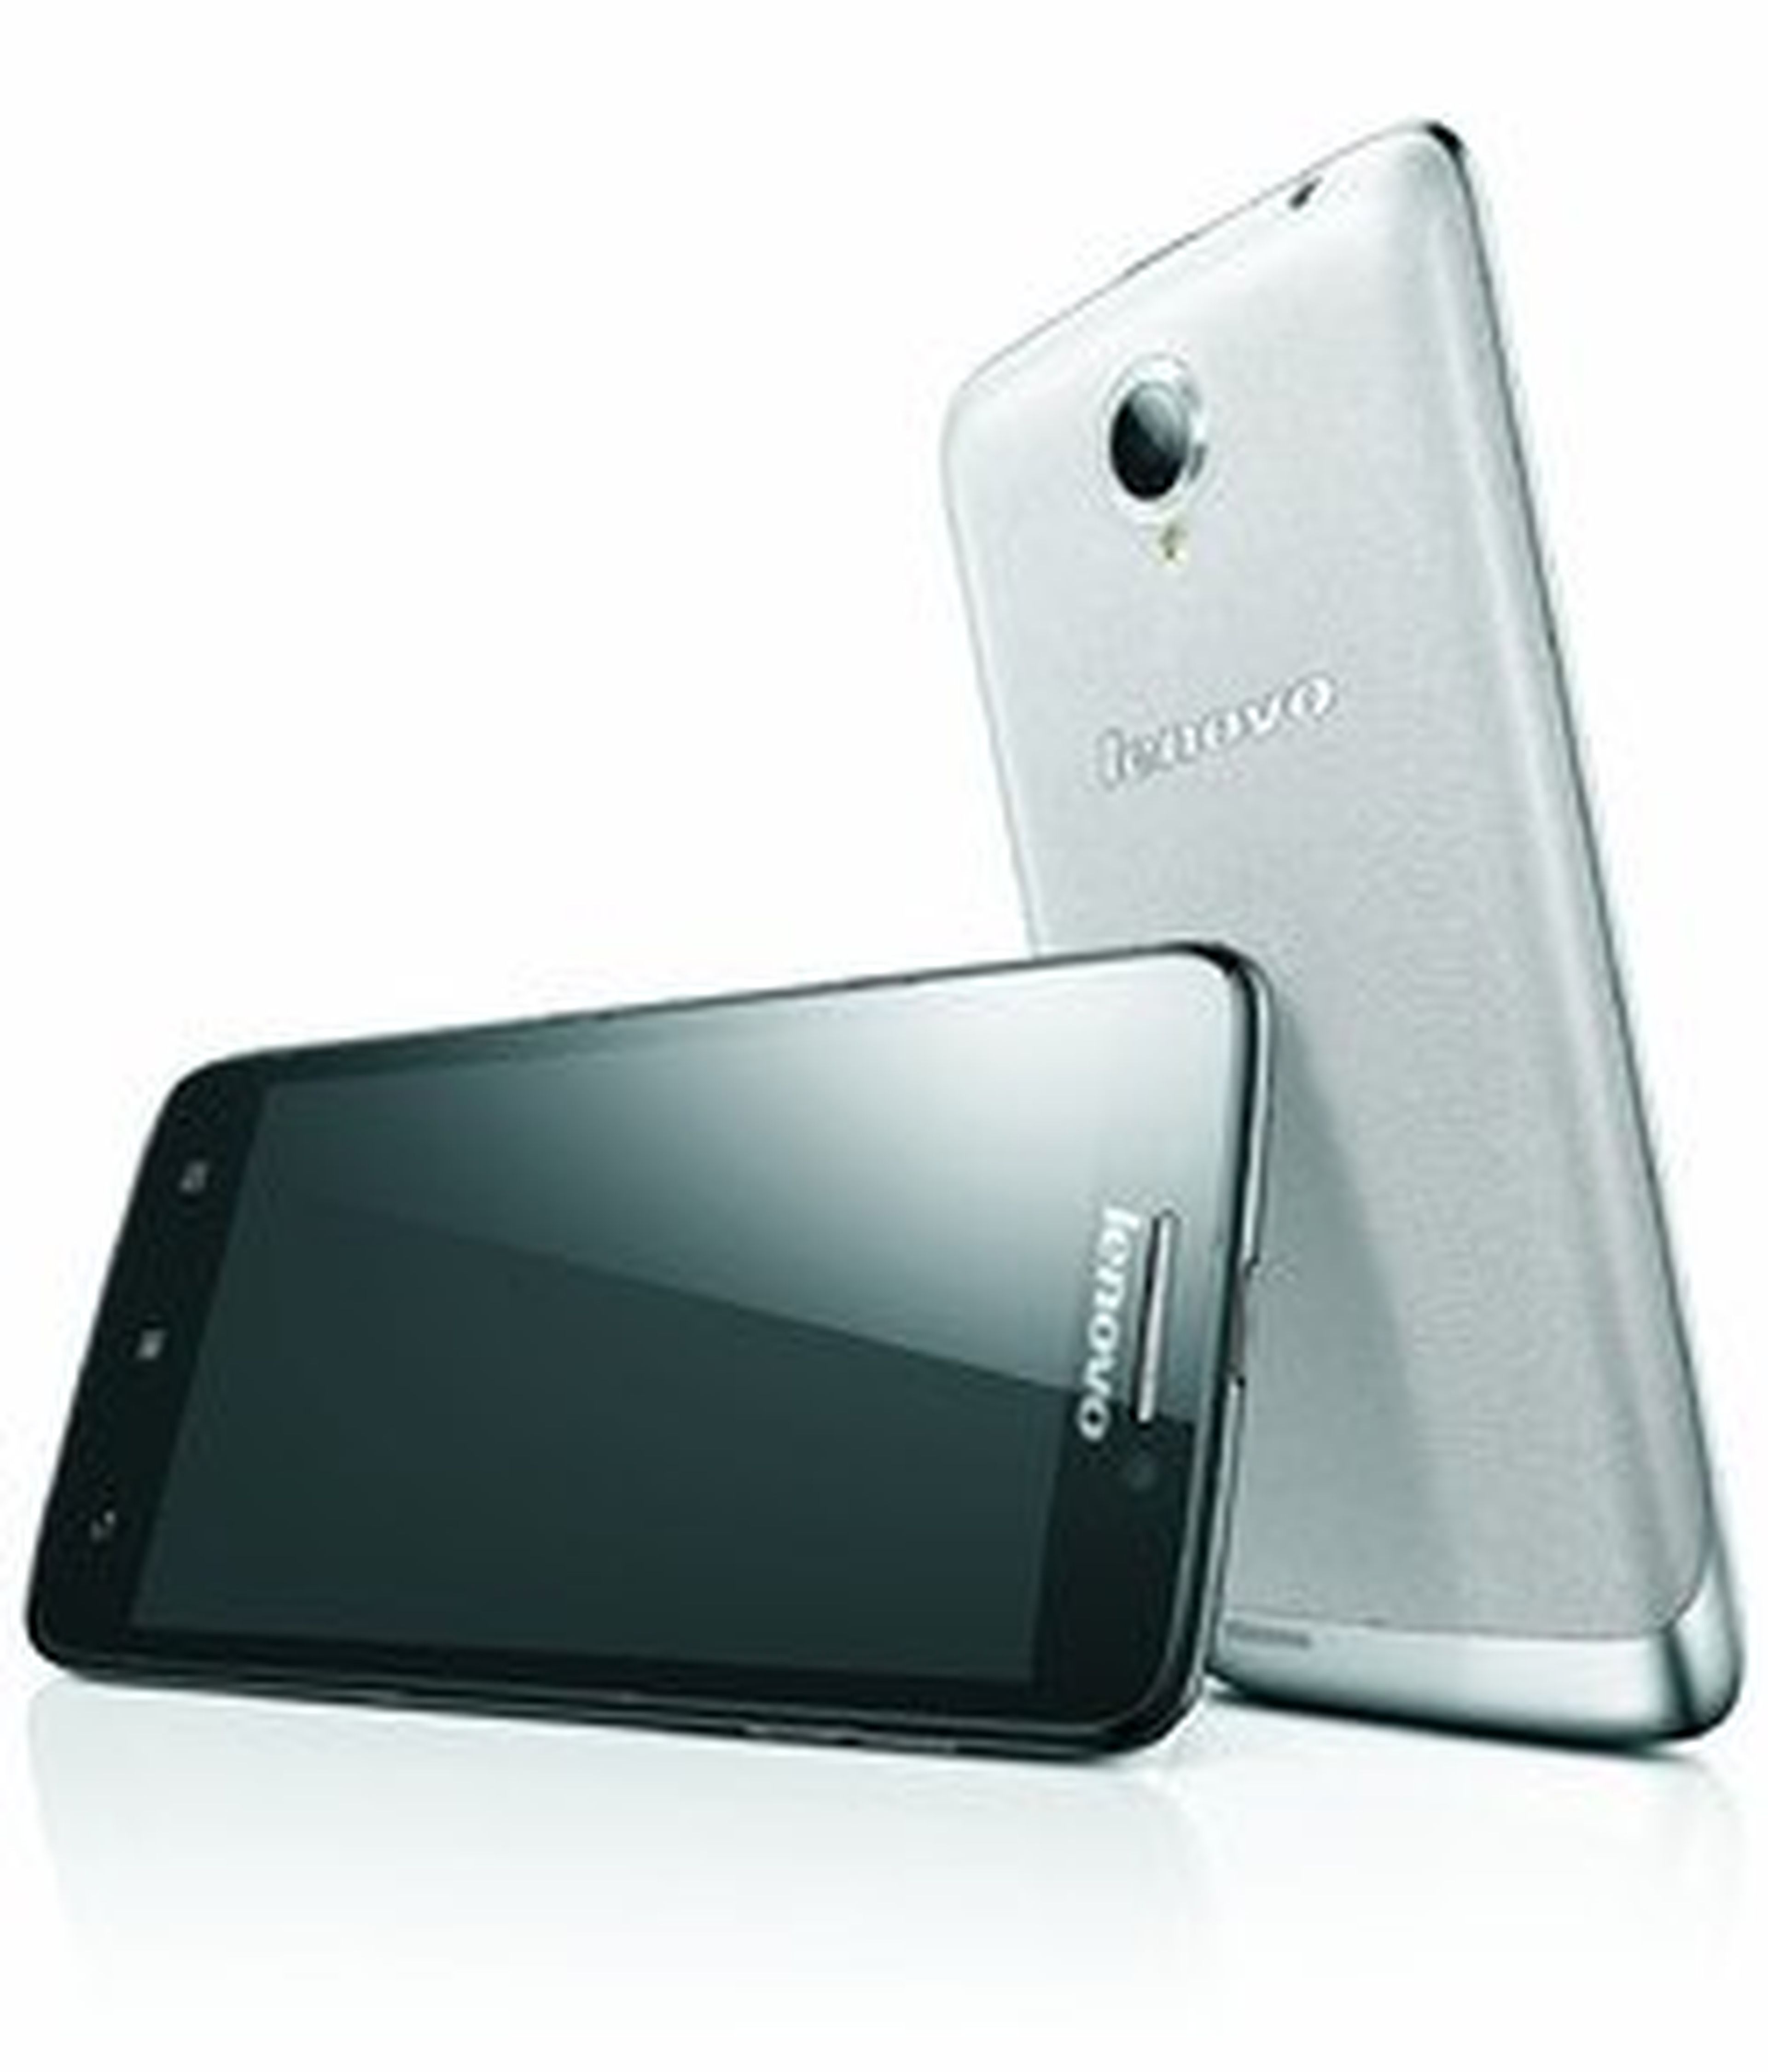 Lenovo presenta nuevos smartphones:Vibe Z, S930, S650 y A859